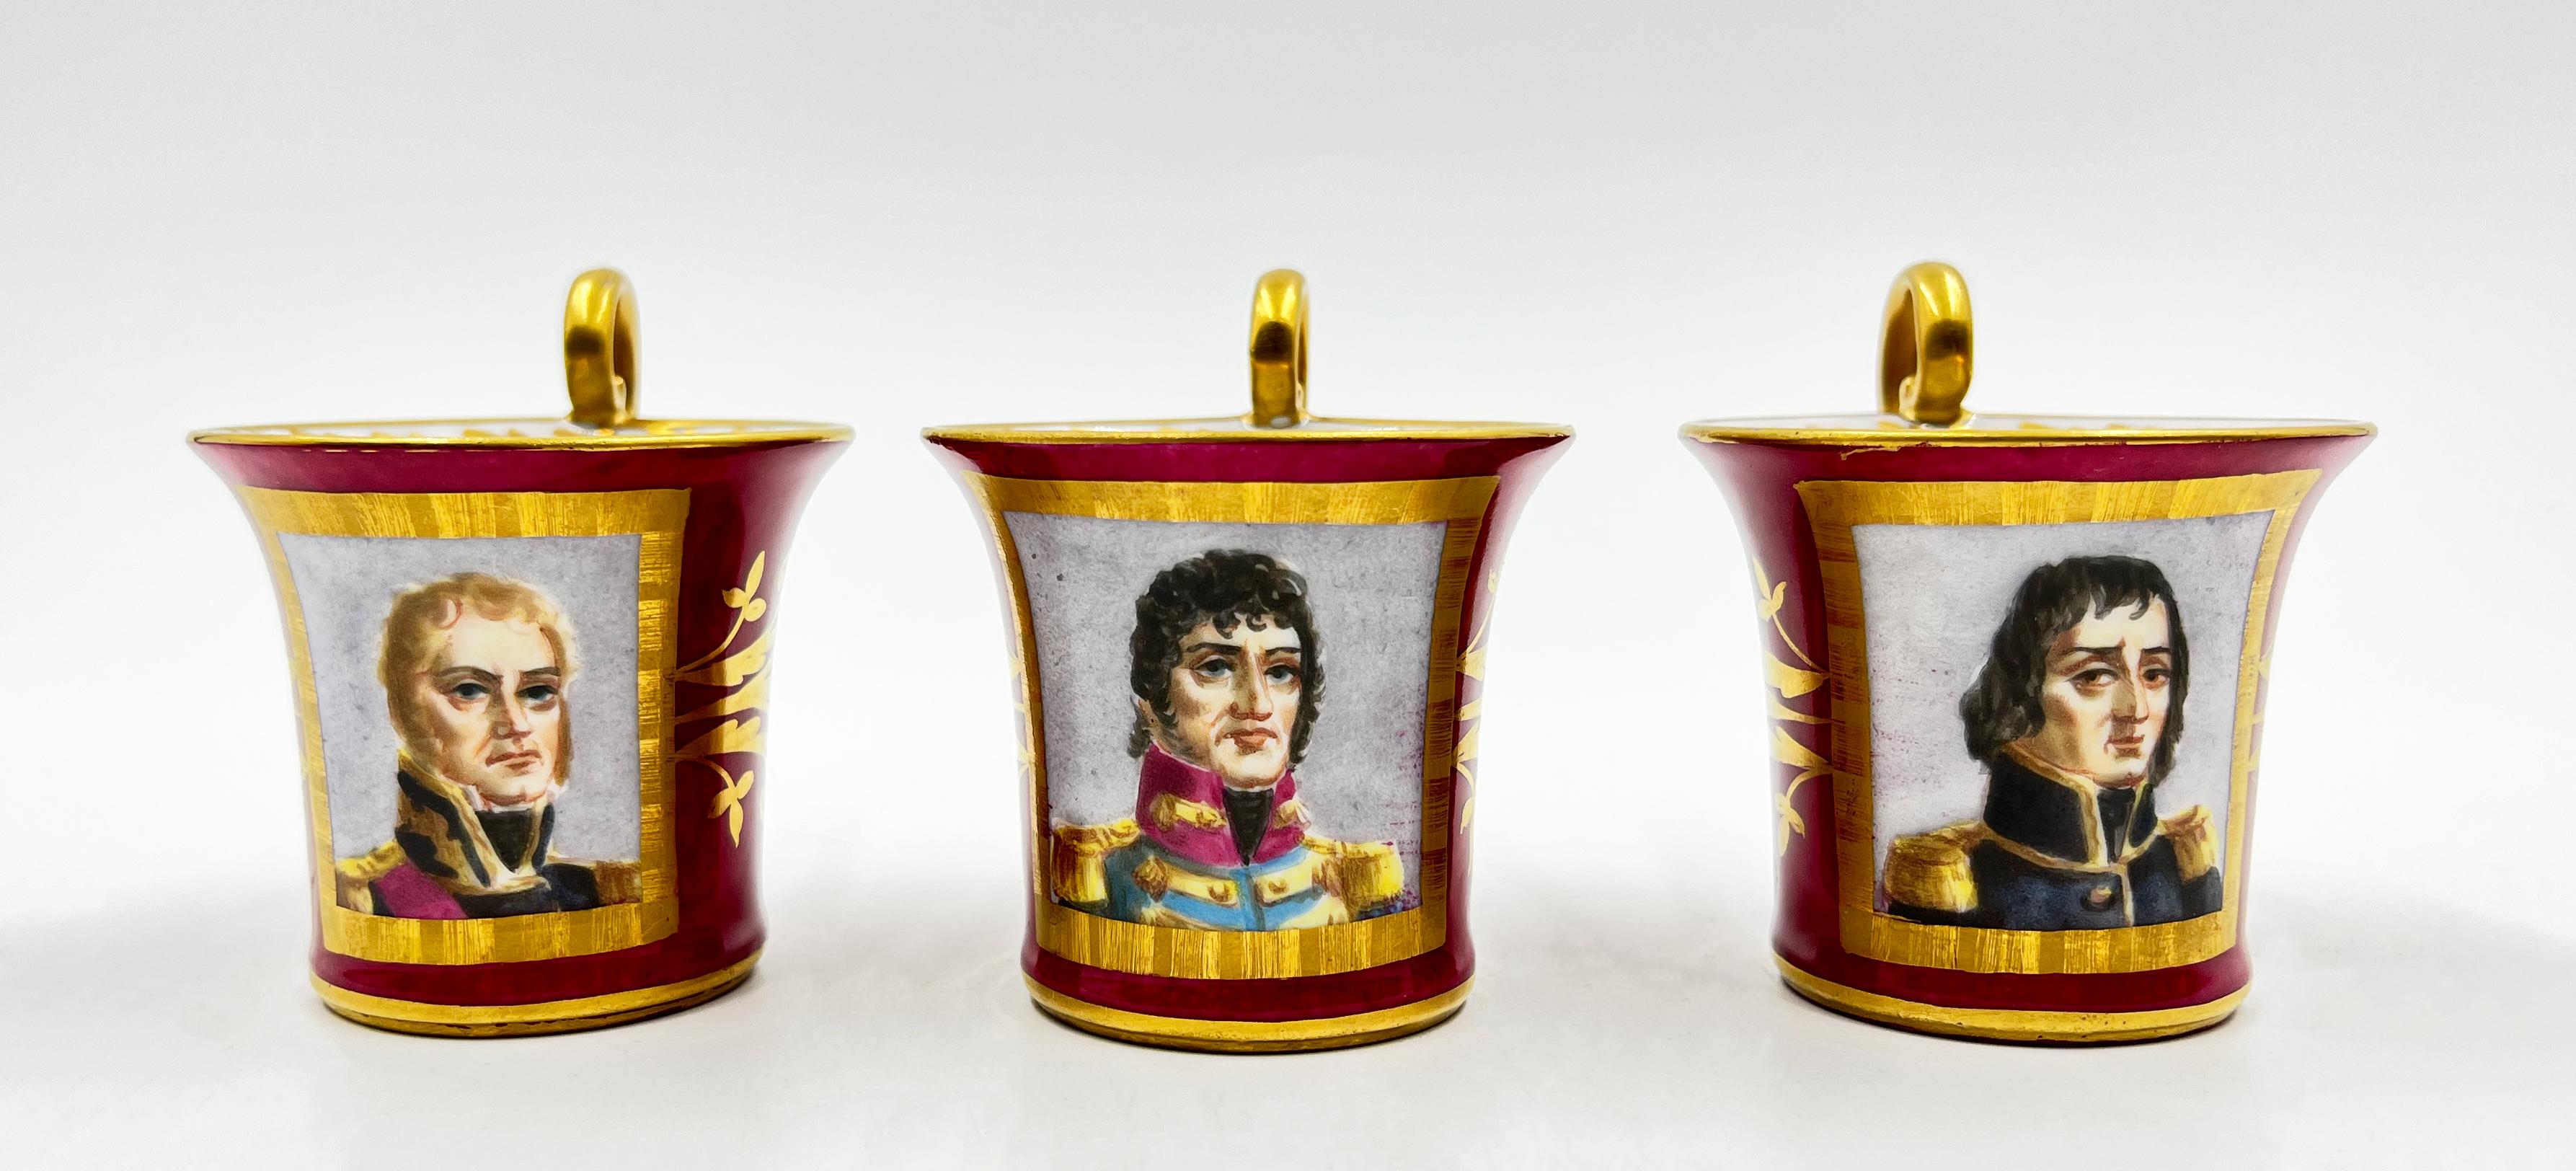 19th Century Paris Porcelain Tea Set Featuring Napoleonic Portraits For Sale 10